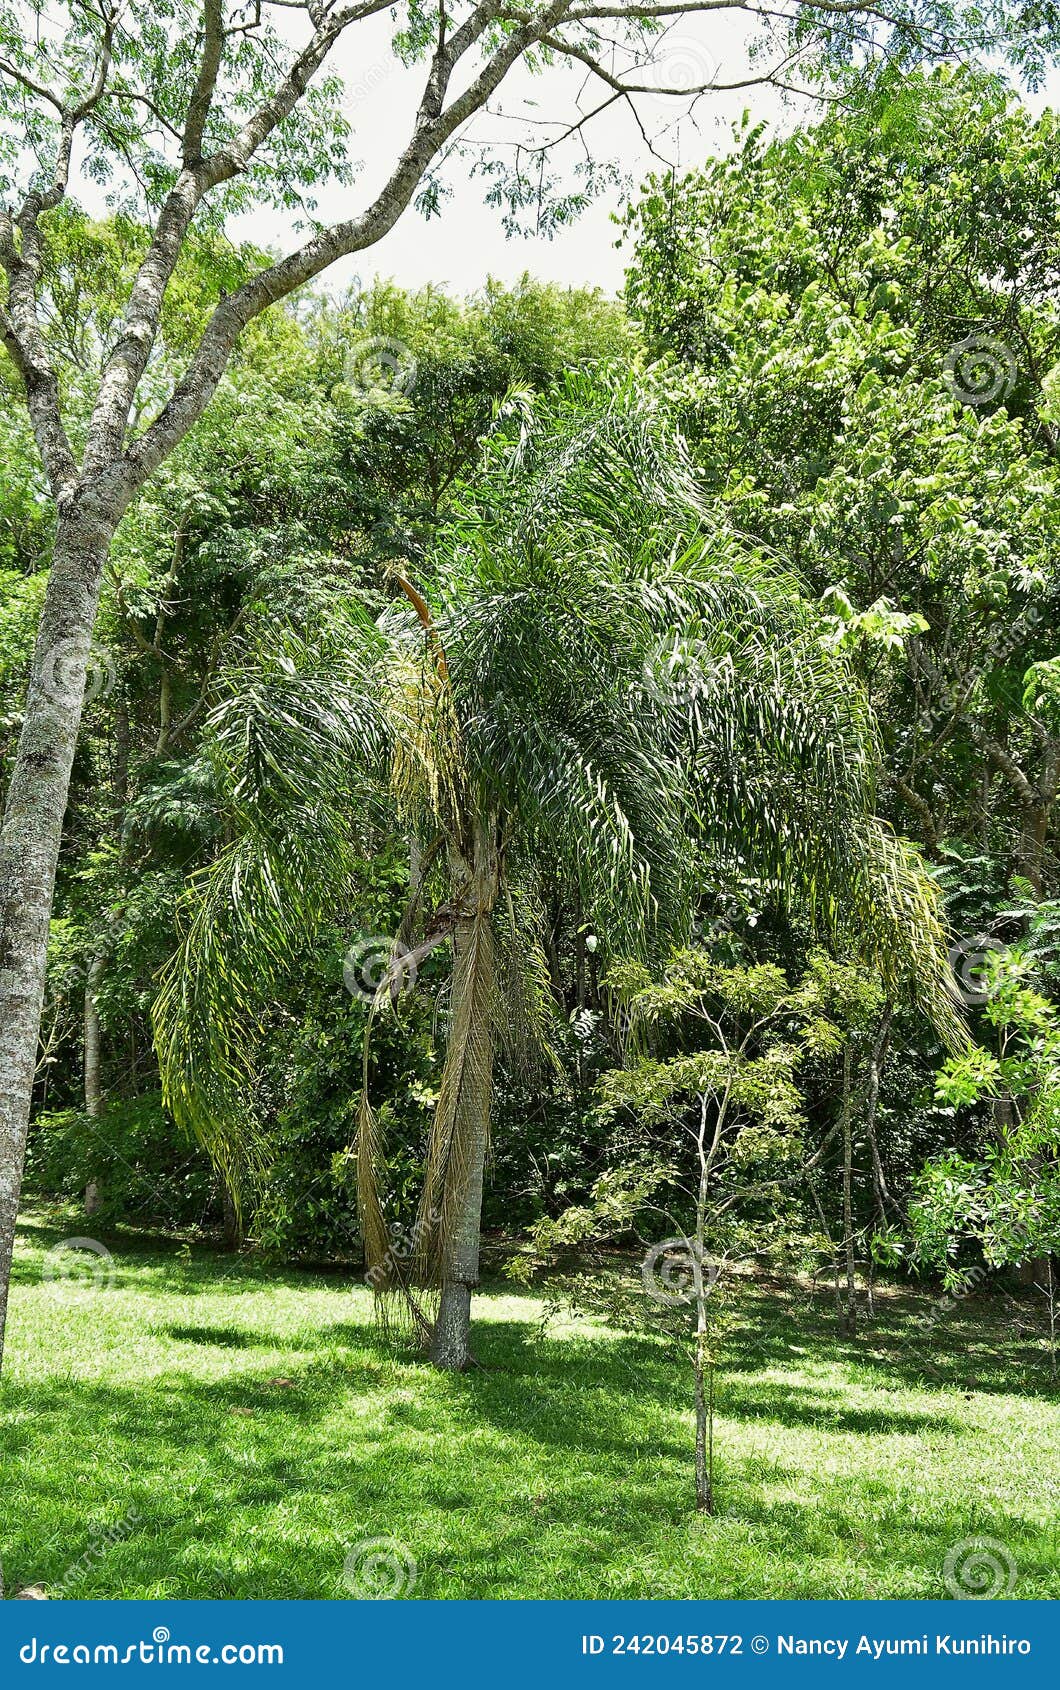 young syagrus romanzoffiana palm tree growing